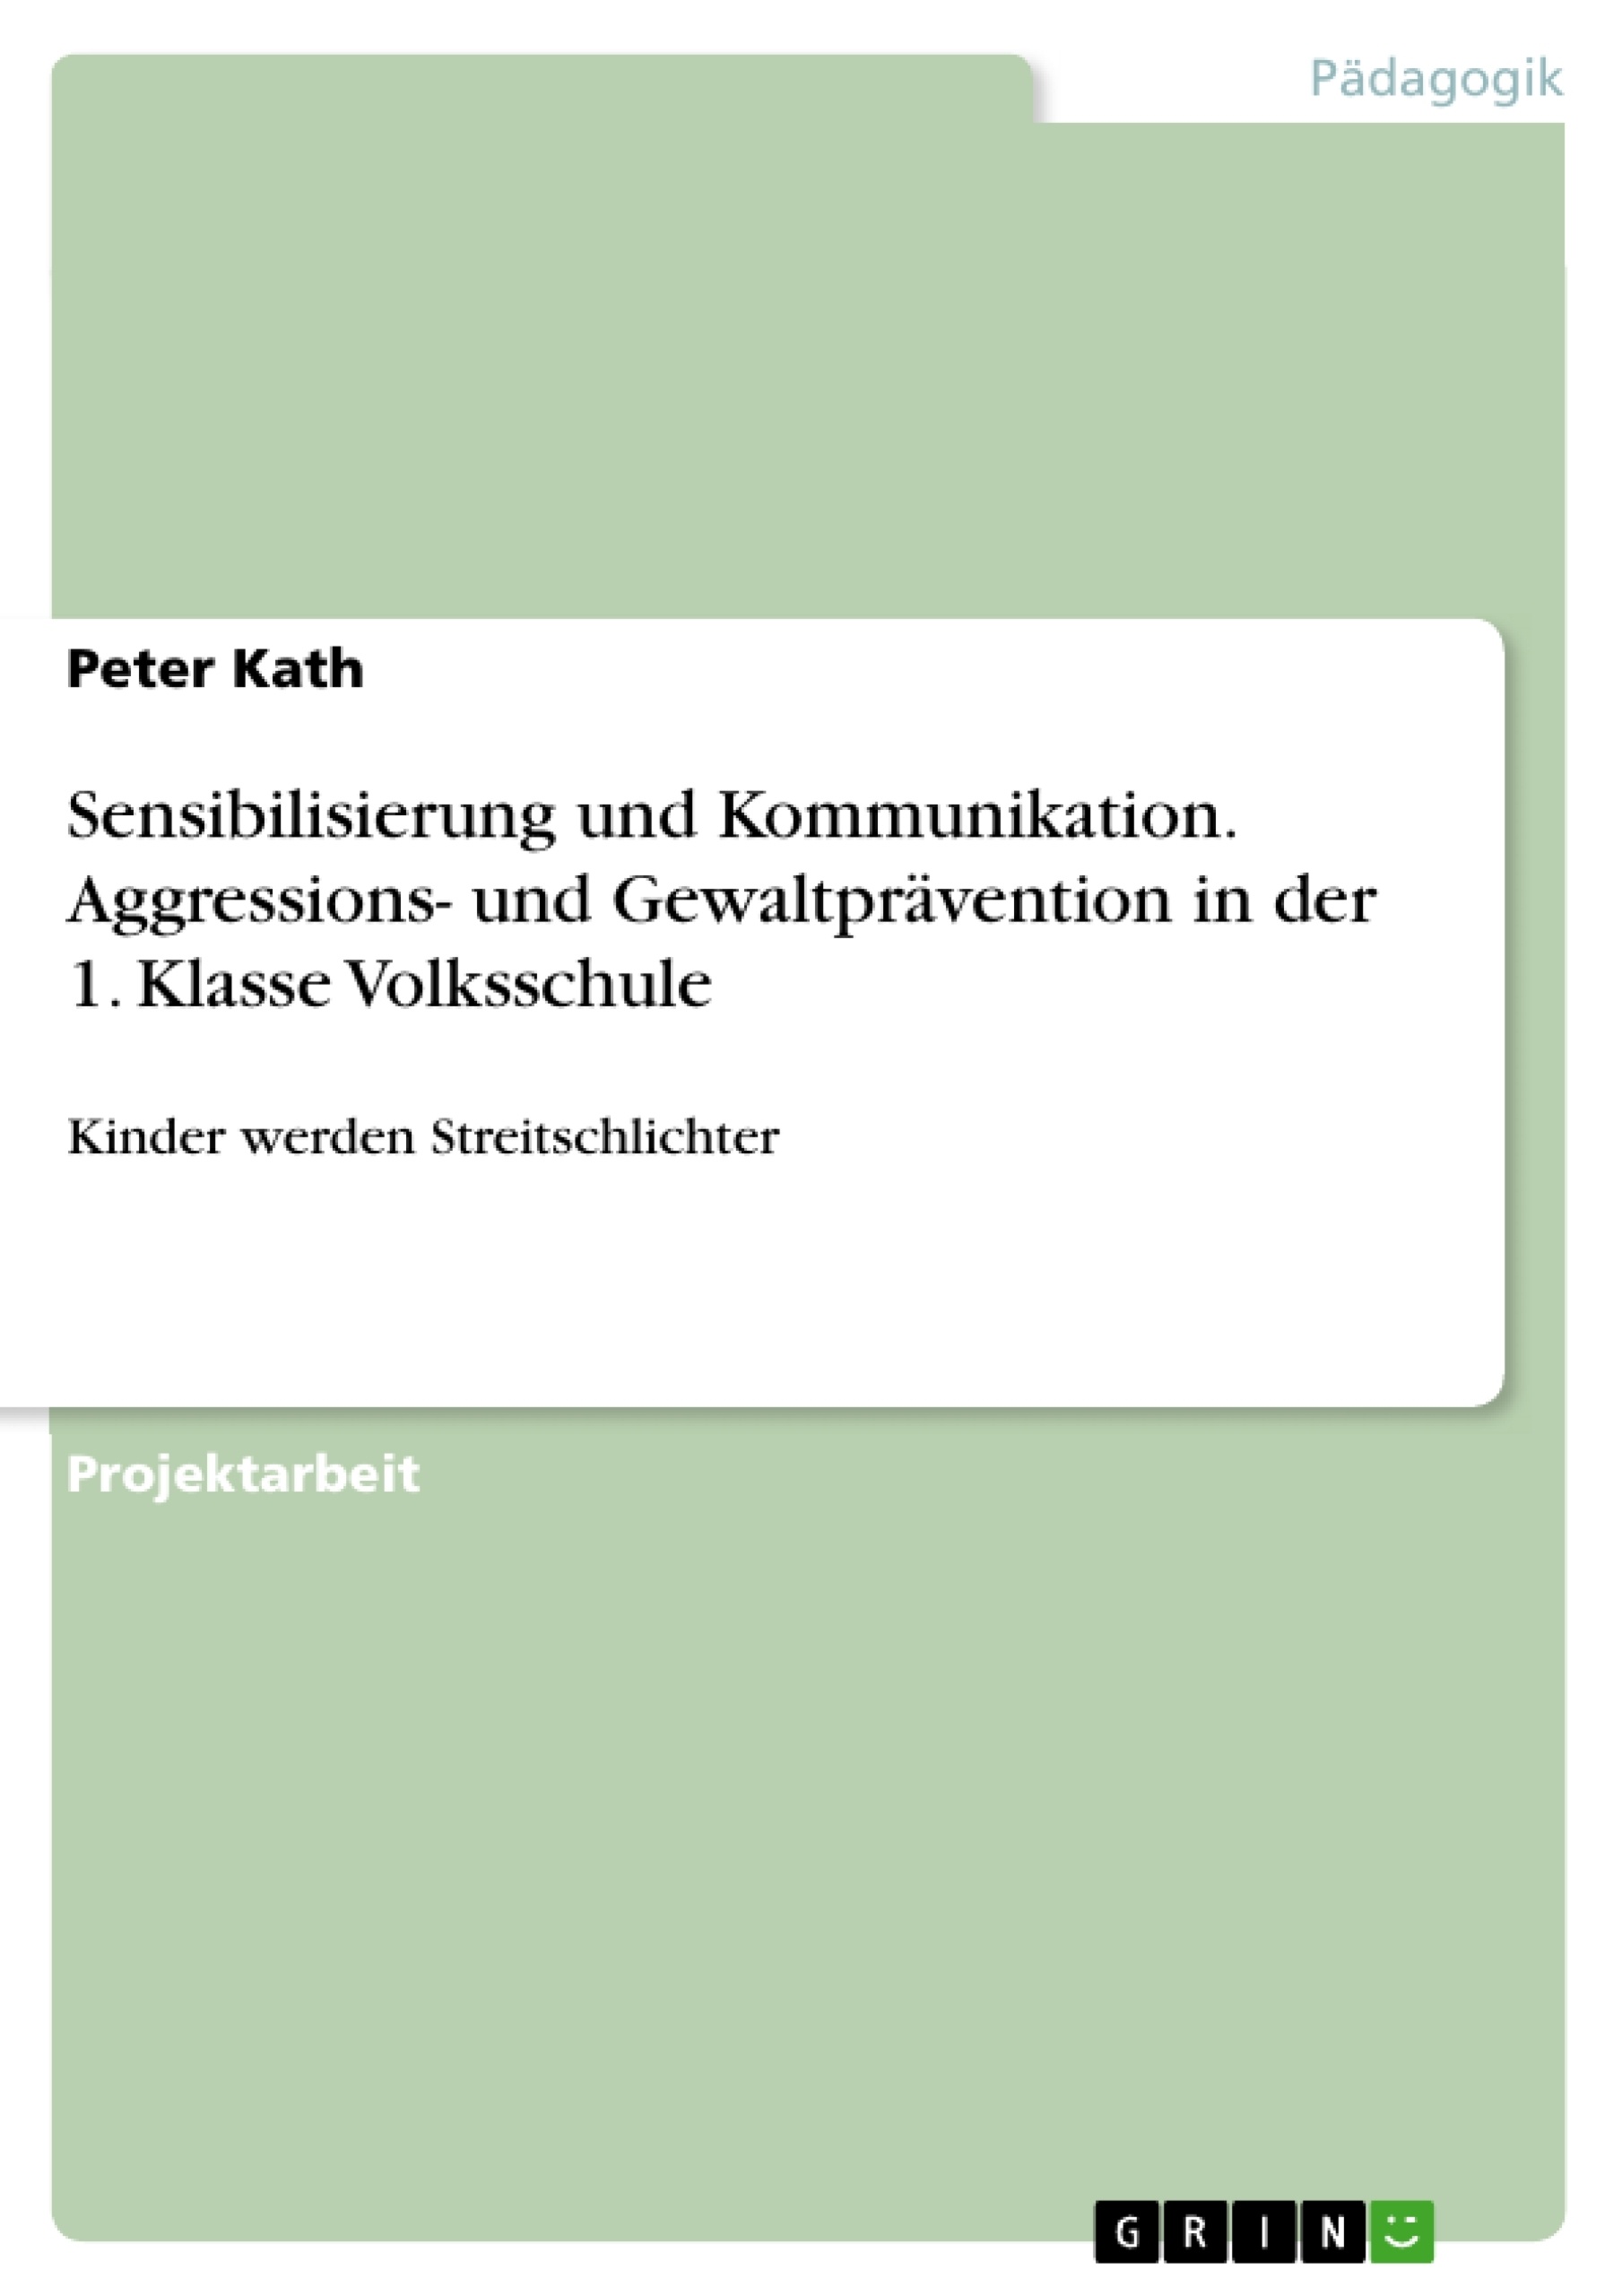 Title: Sensibilisierung und Kommunikation. Aggressions- und Gewaltprävention in der 1. Klasse Volksschule